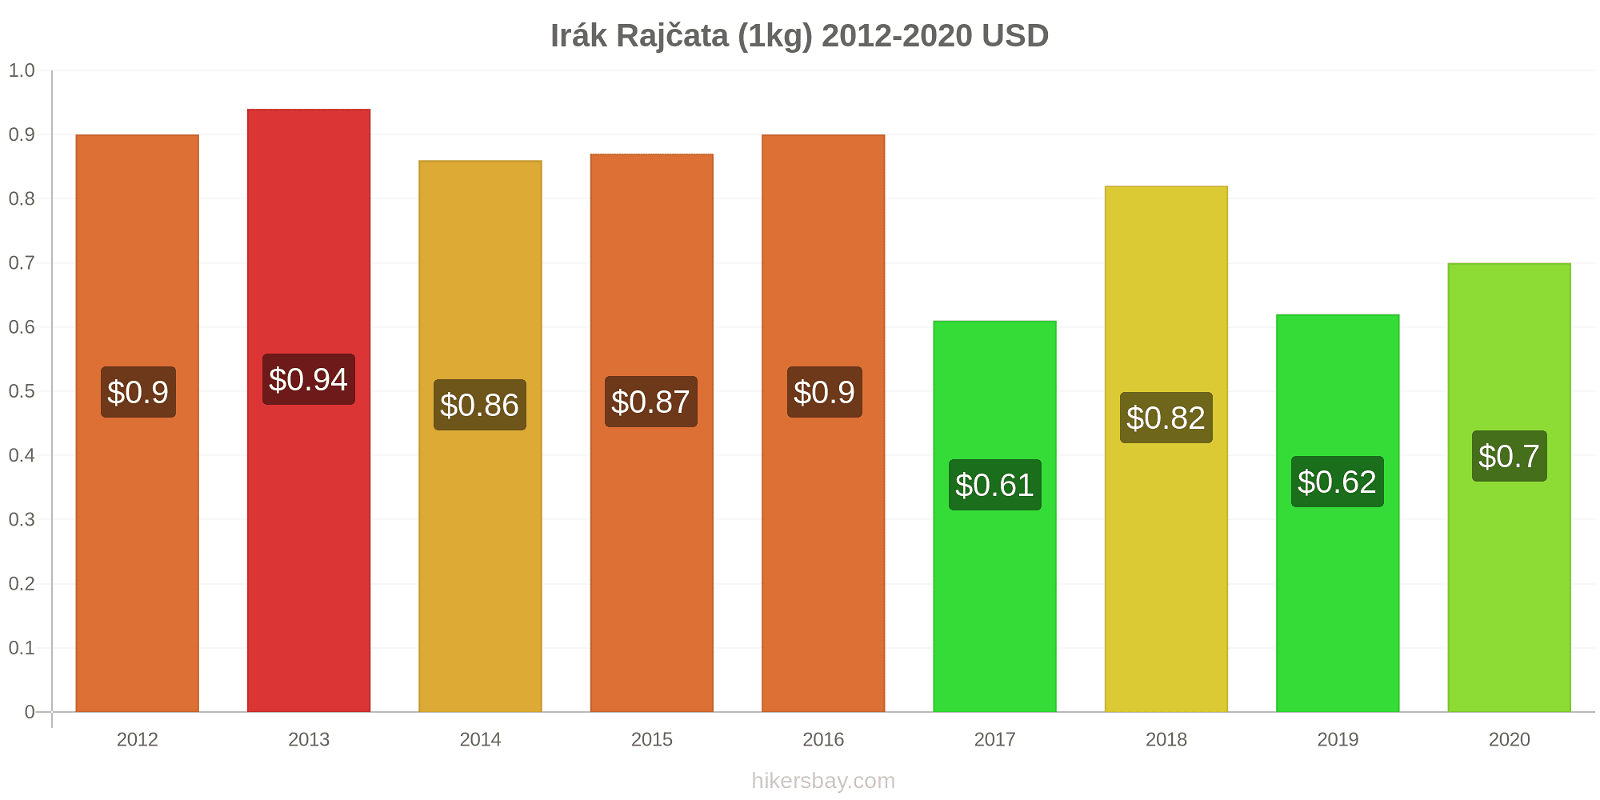 Irák změny cen Rajčata (1kg) hikersbay.com